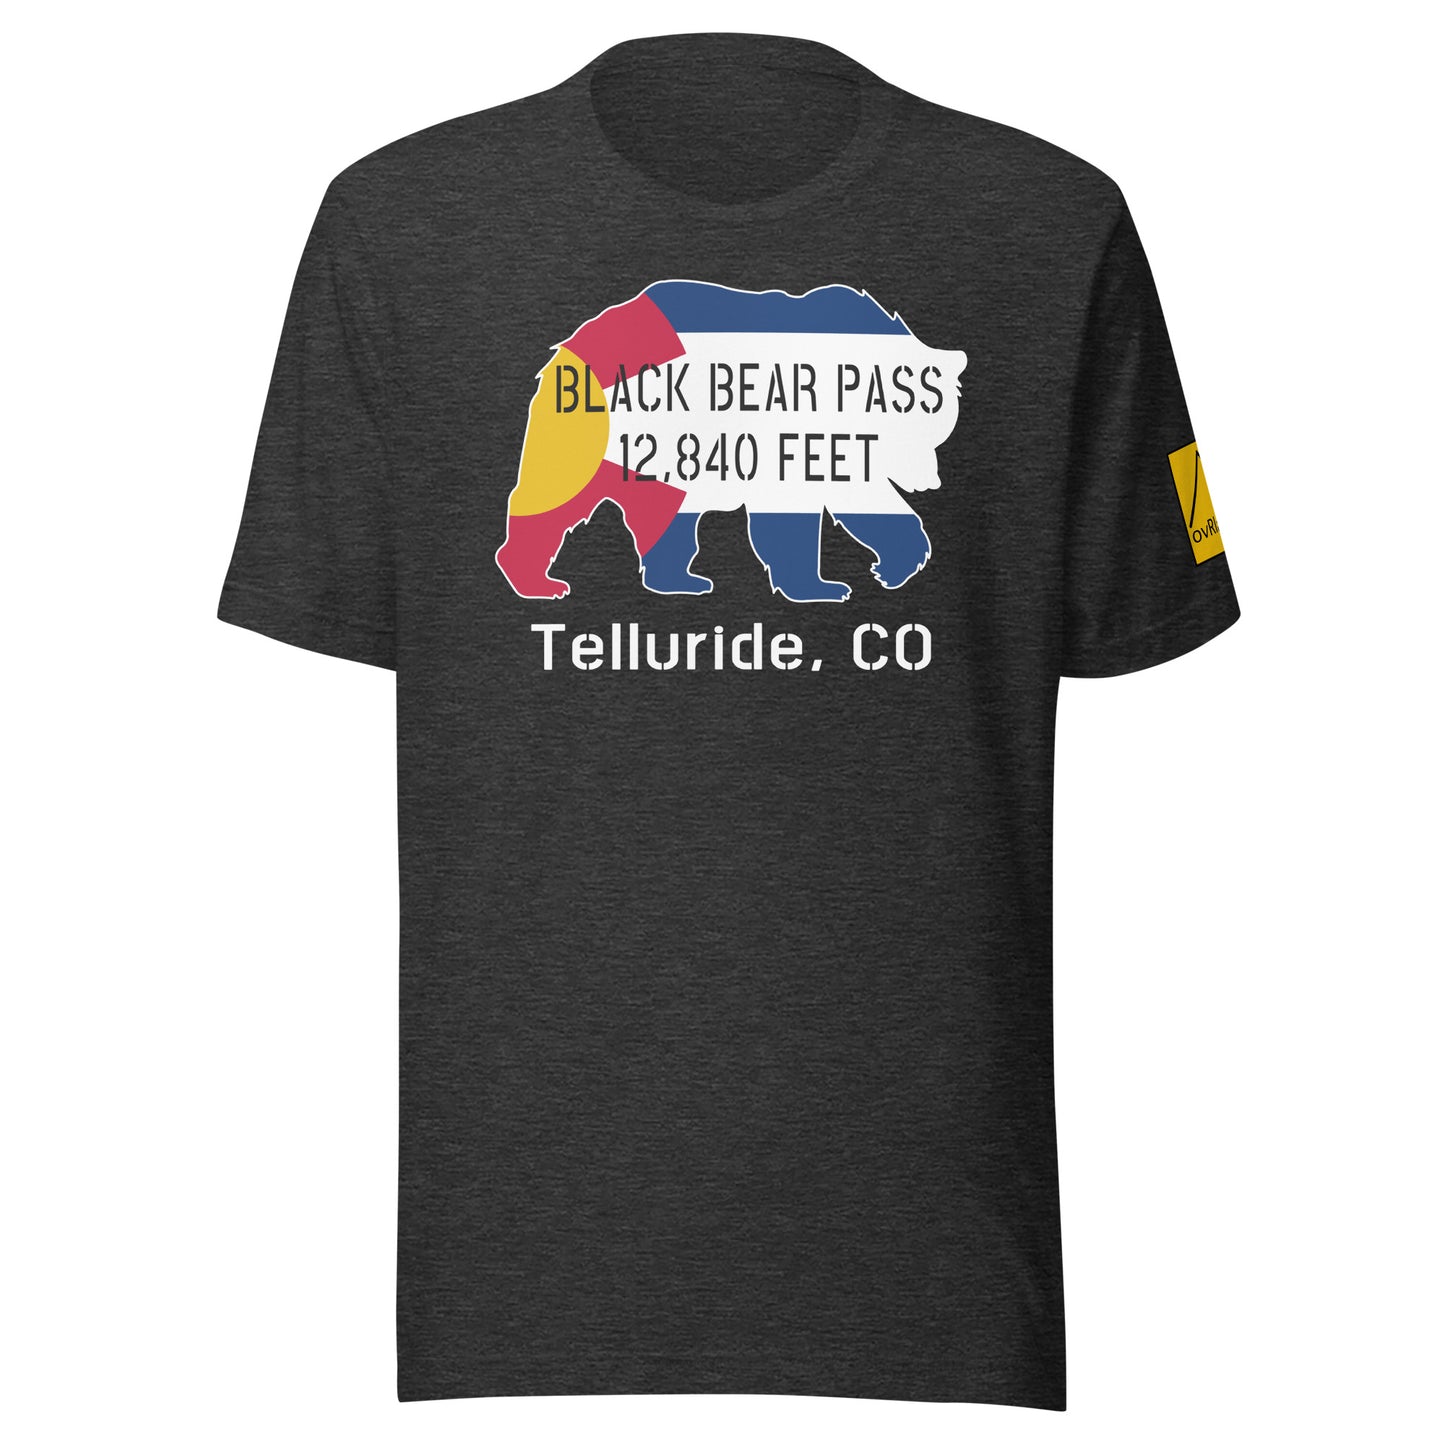 Black Bear Pass, 12840 feet, Telluride, CO. Dark Grey T-shirt. overland365.com